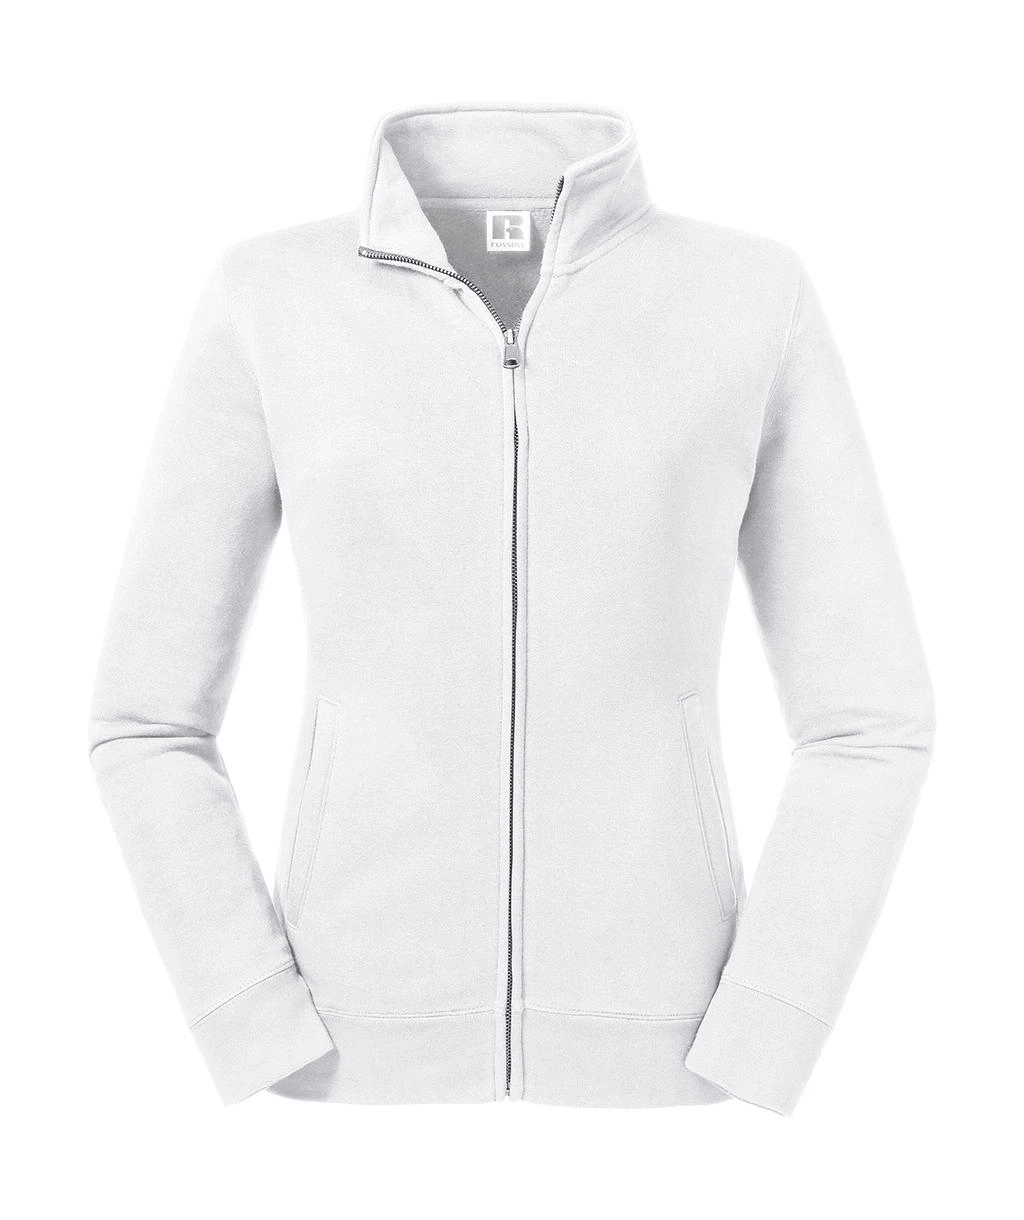 Ladies` Authentic Sweat Jacket zum Besticken und Bedrucken in der Farbe White mit Ihren Logo, Schriftzug oder Motiv.